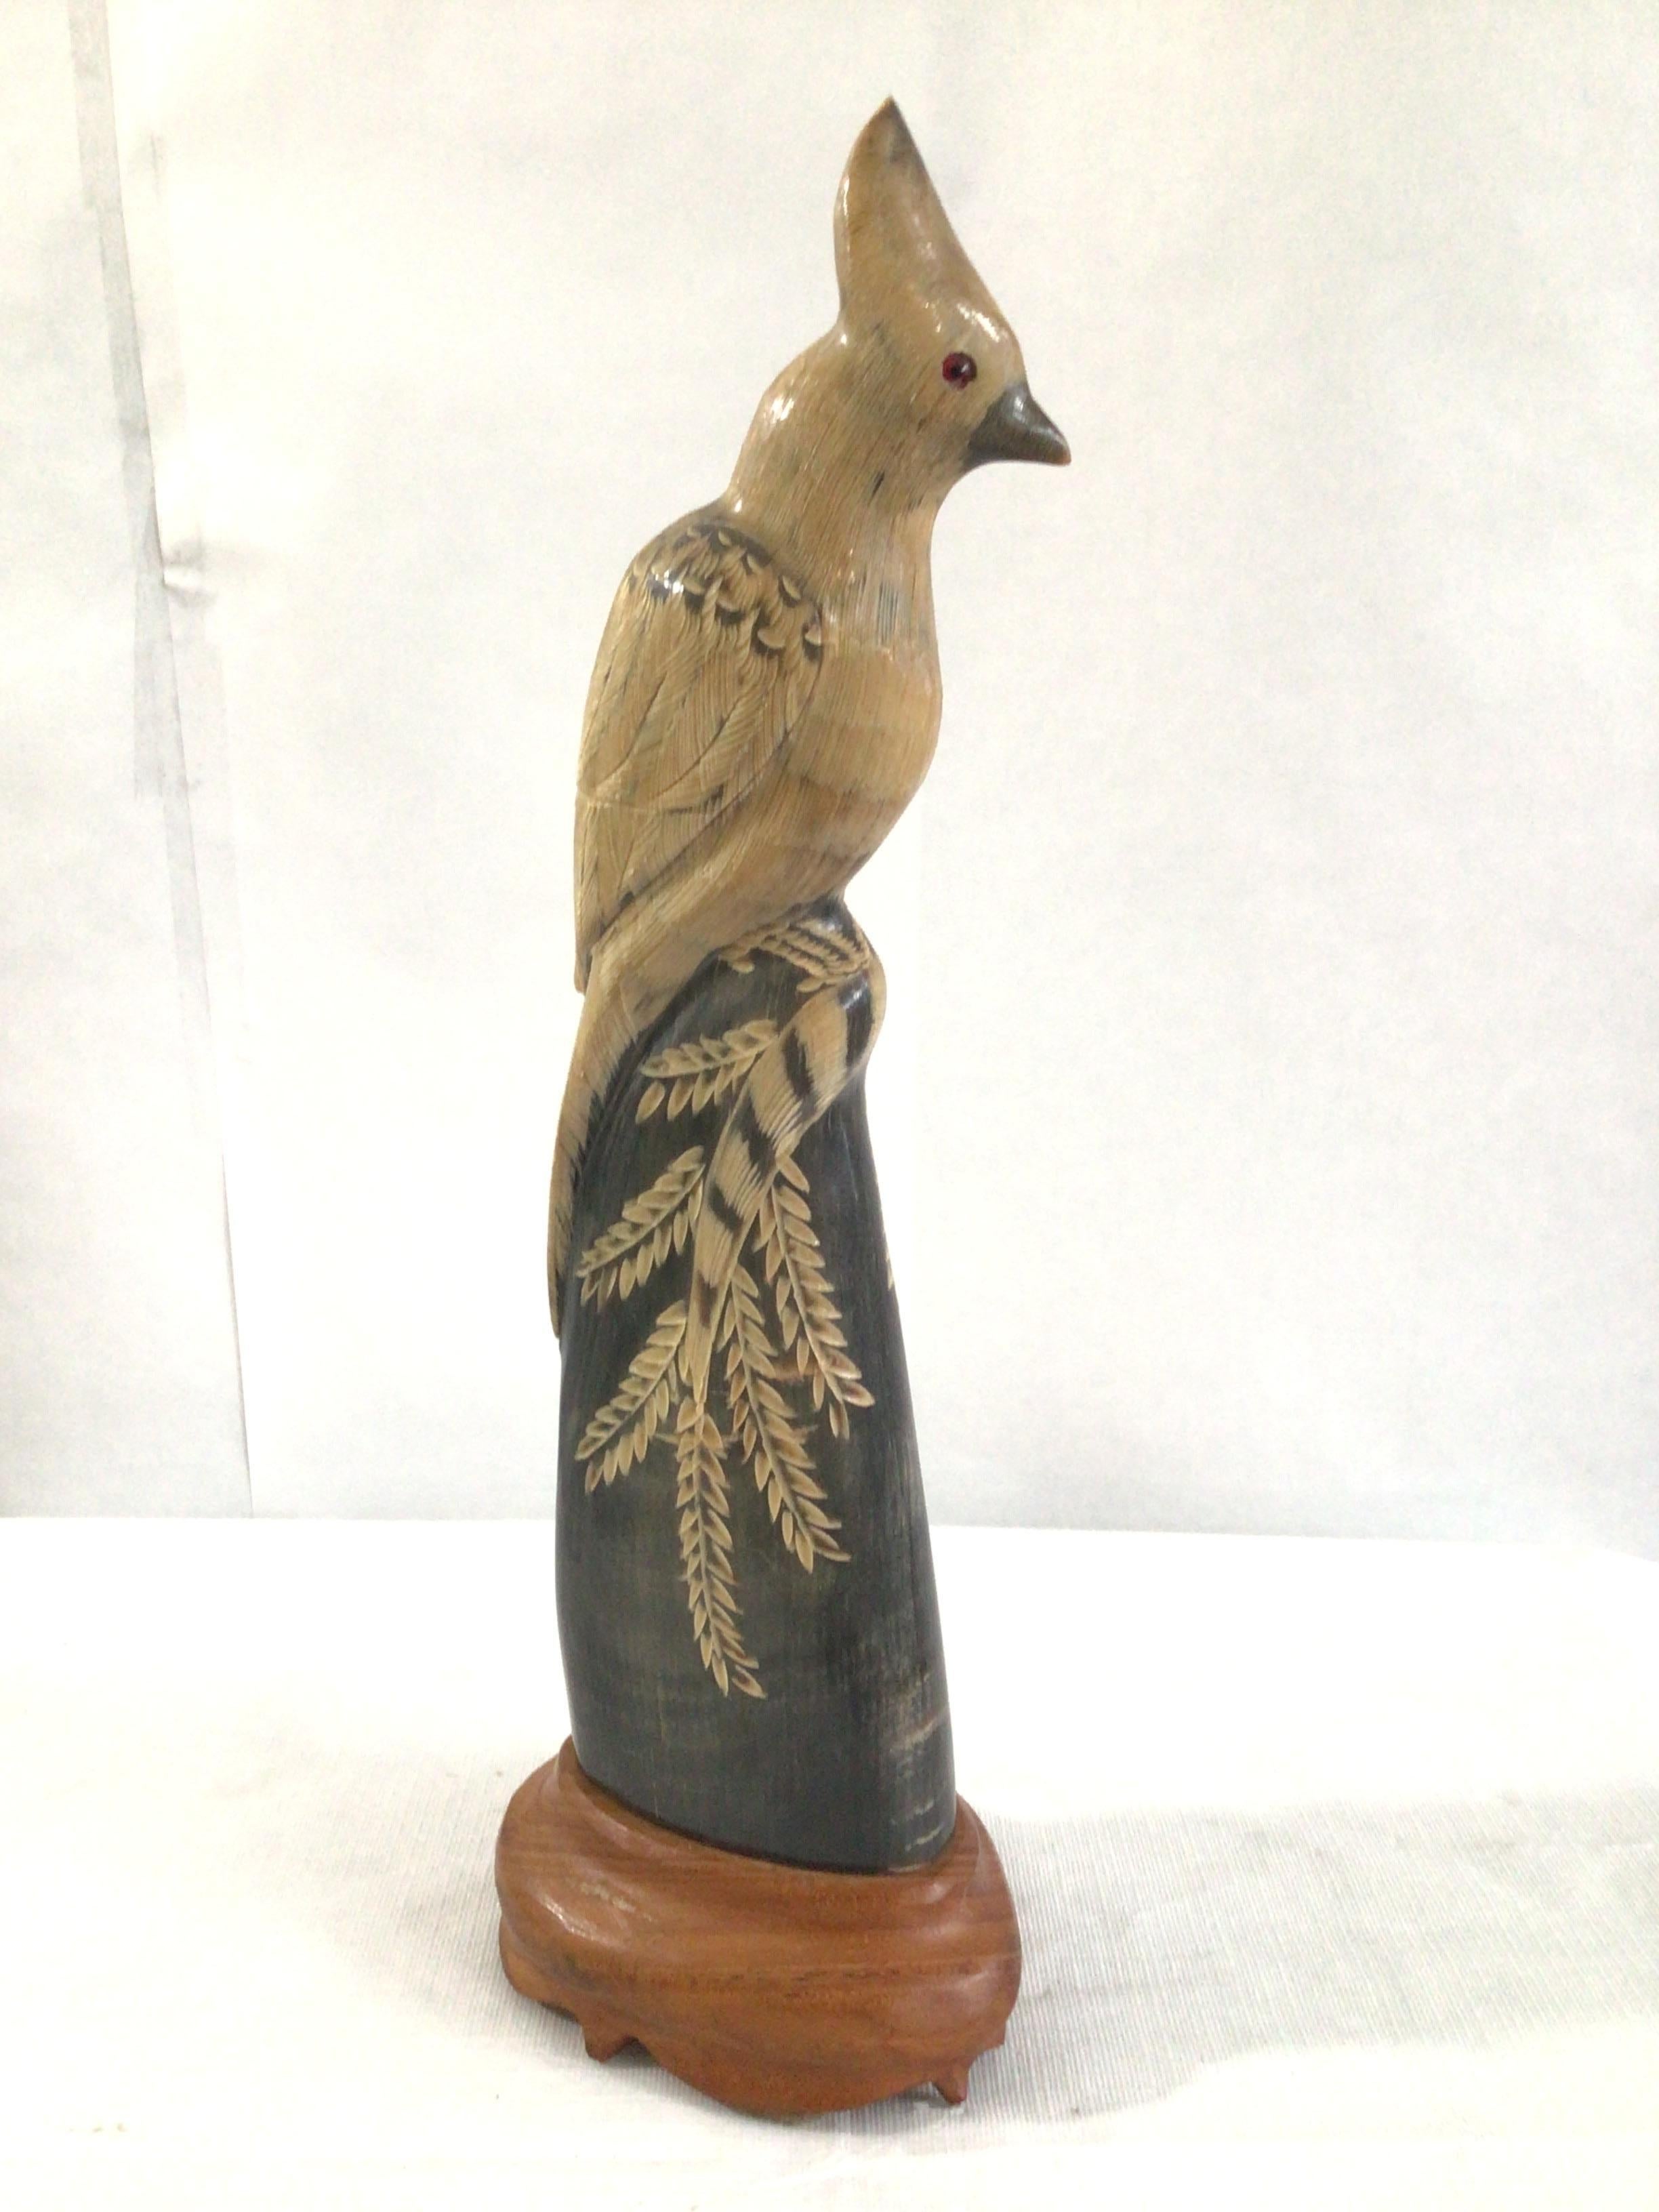 1940's Vintage Carved Water Buffalo Horn (corne de buffle d'eau sculptée) 
Sculpture d'un perroquet / oiseau sur une base en bois, sculptée et détaillée à la main
Couleurs : Noir, Tan, Bois naturel